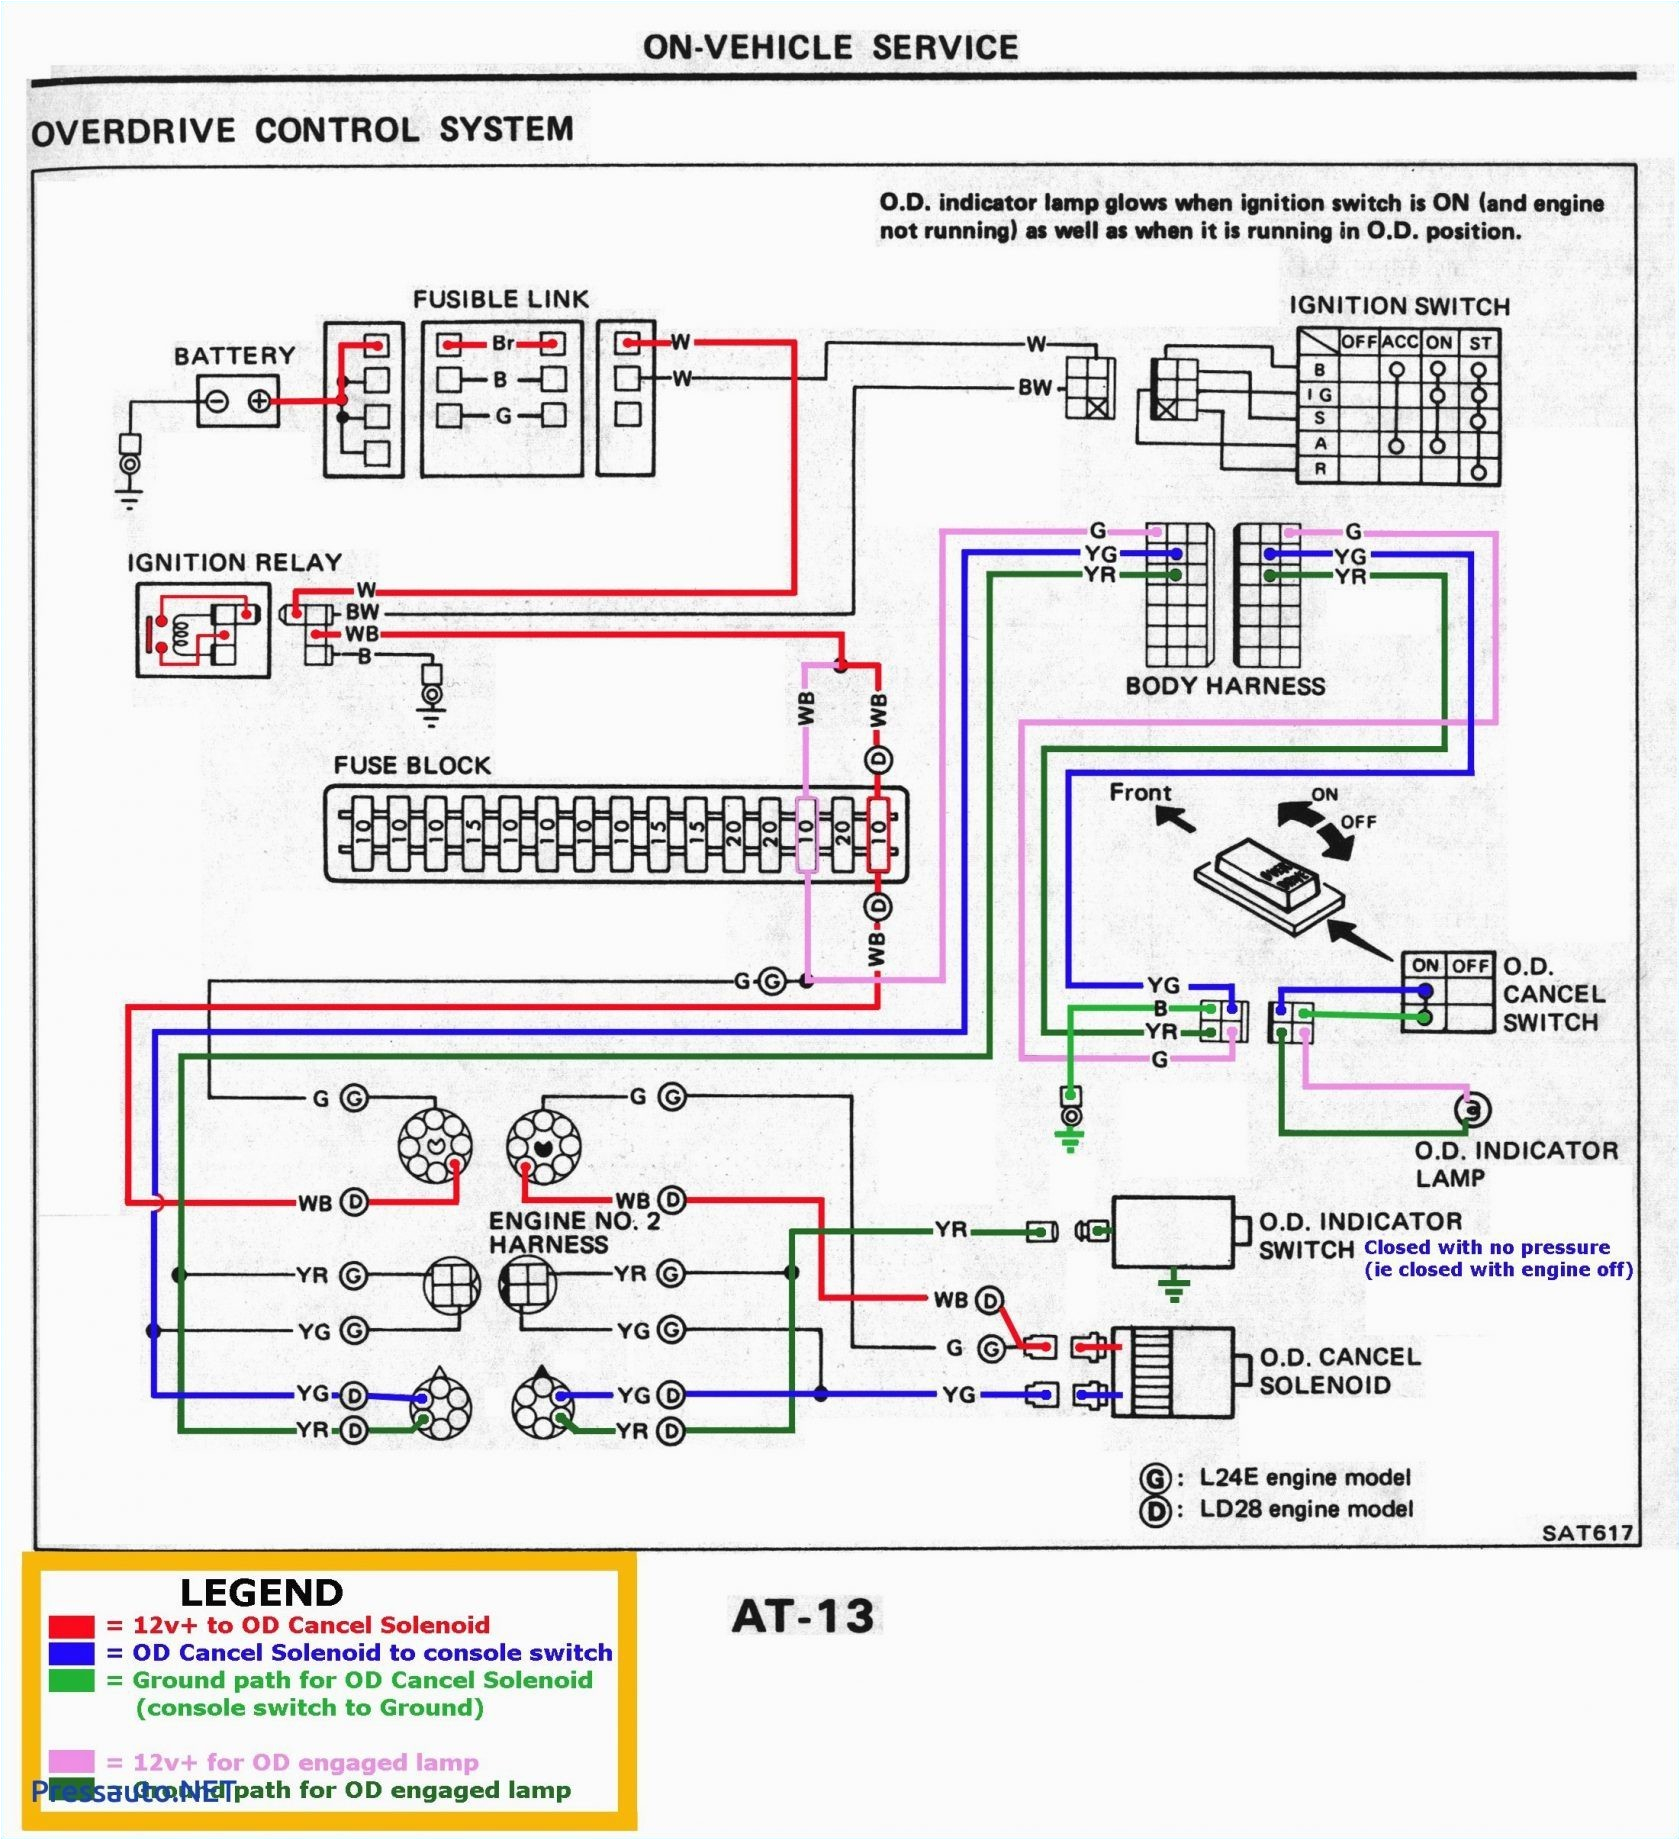 motorola alternator wiring diagram wiring diagram user motorola marine alternator wiring diagram